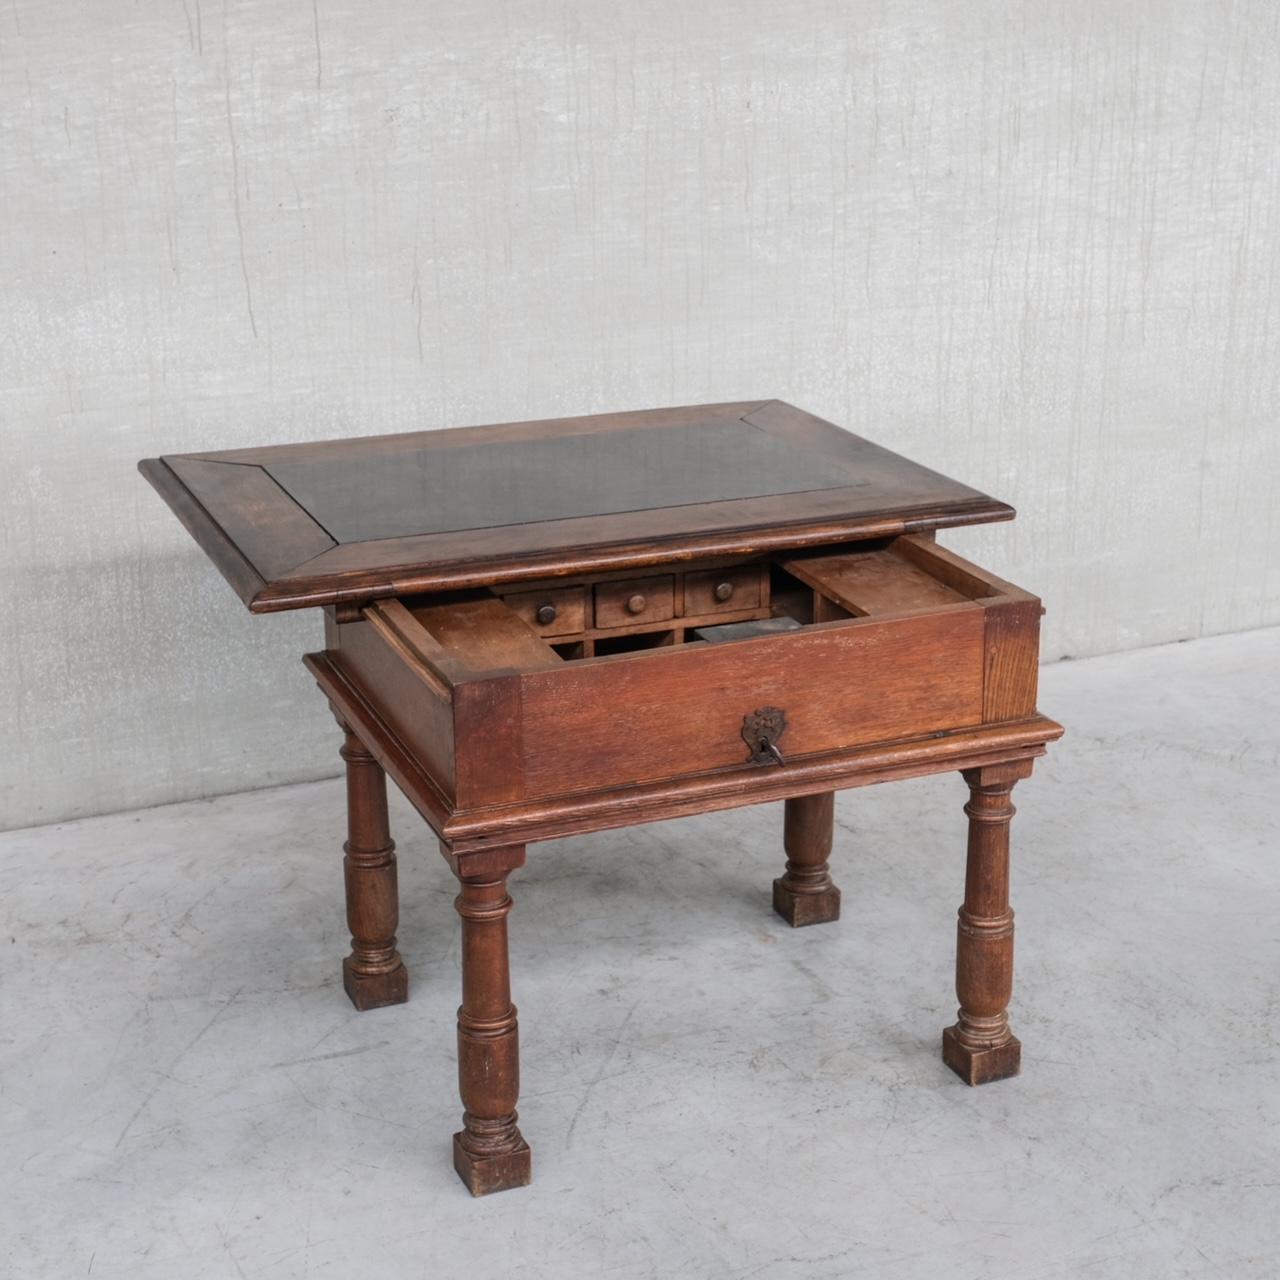 Ein antiker Schreibtisch aus dem 17-18. Jahrhundert. 

Wahrscheinlich italienisch, aber aus Frankreich stammend. 

Massive Eiche mit einer Marmorplatte. 

Ein außergewöhnlicher Tisch mit einem raffiniert versteckten, verschiebbaren Stauraum,